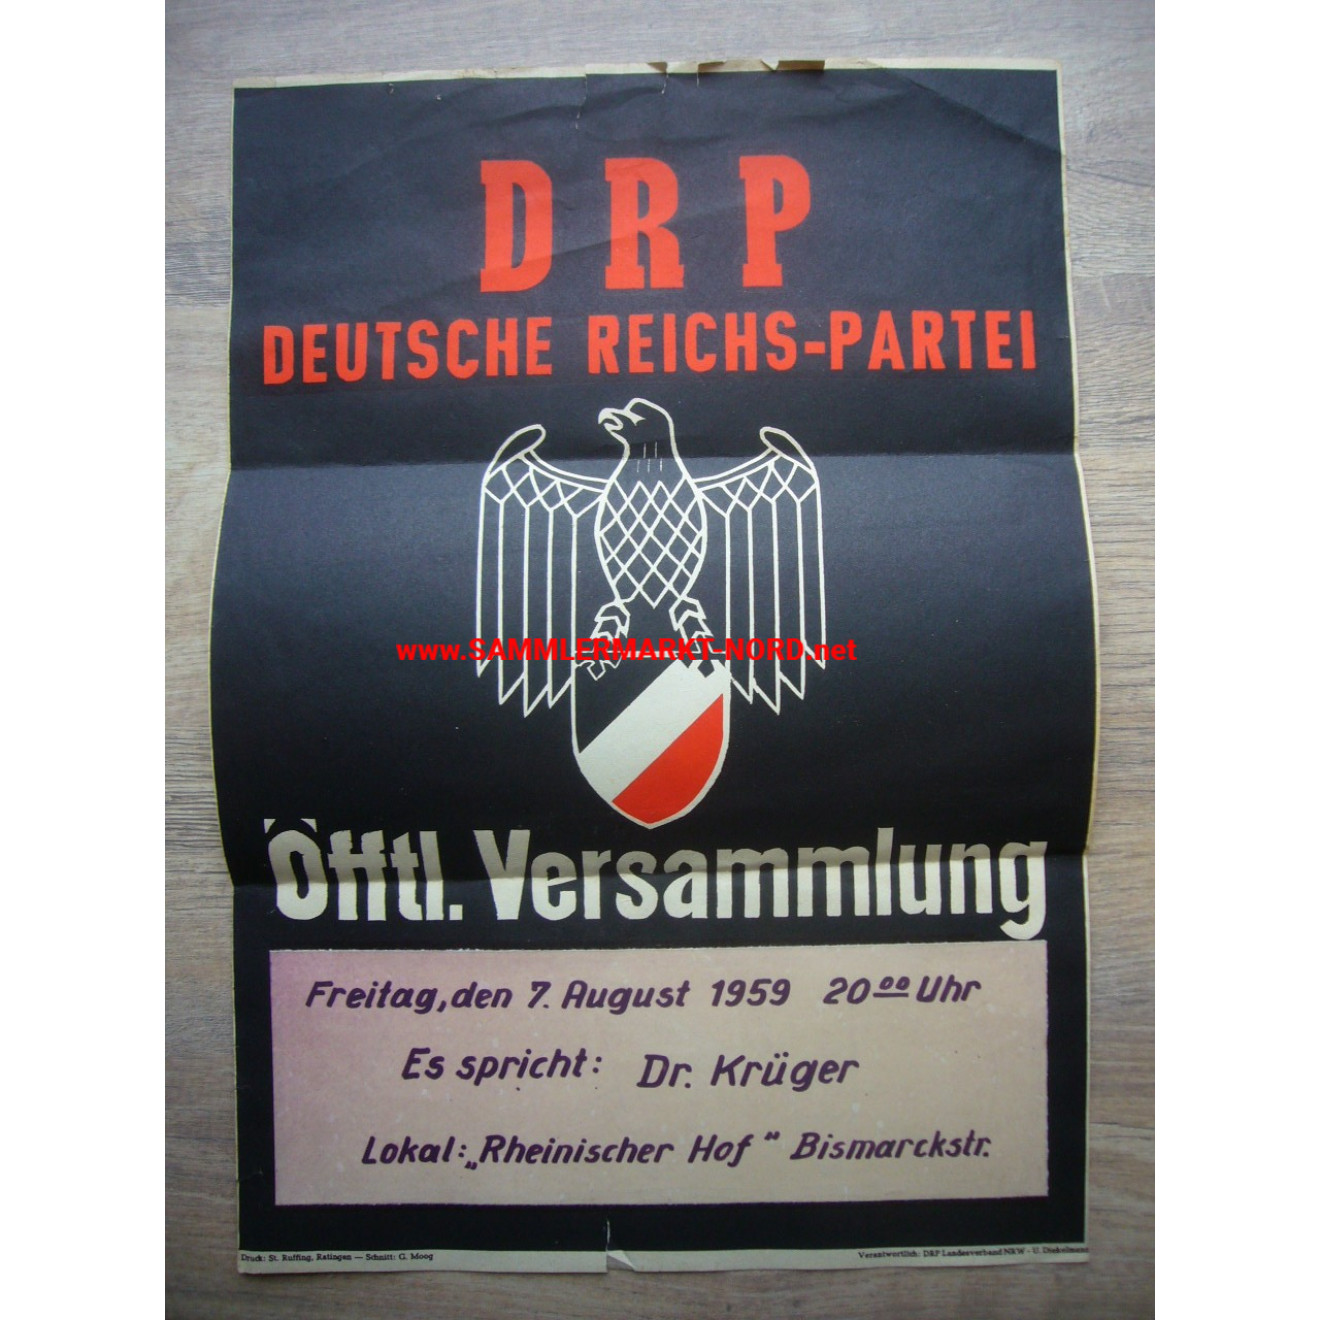 DRP Deutsche Reichspartei - Wahlplakat 1959